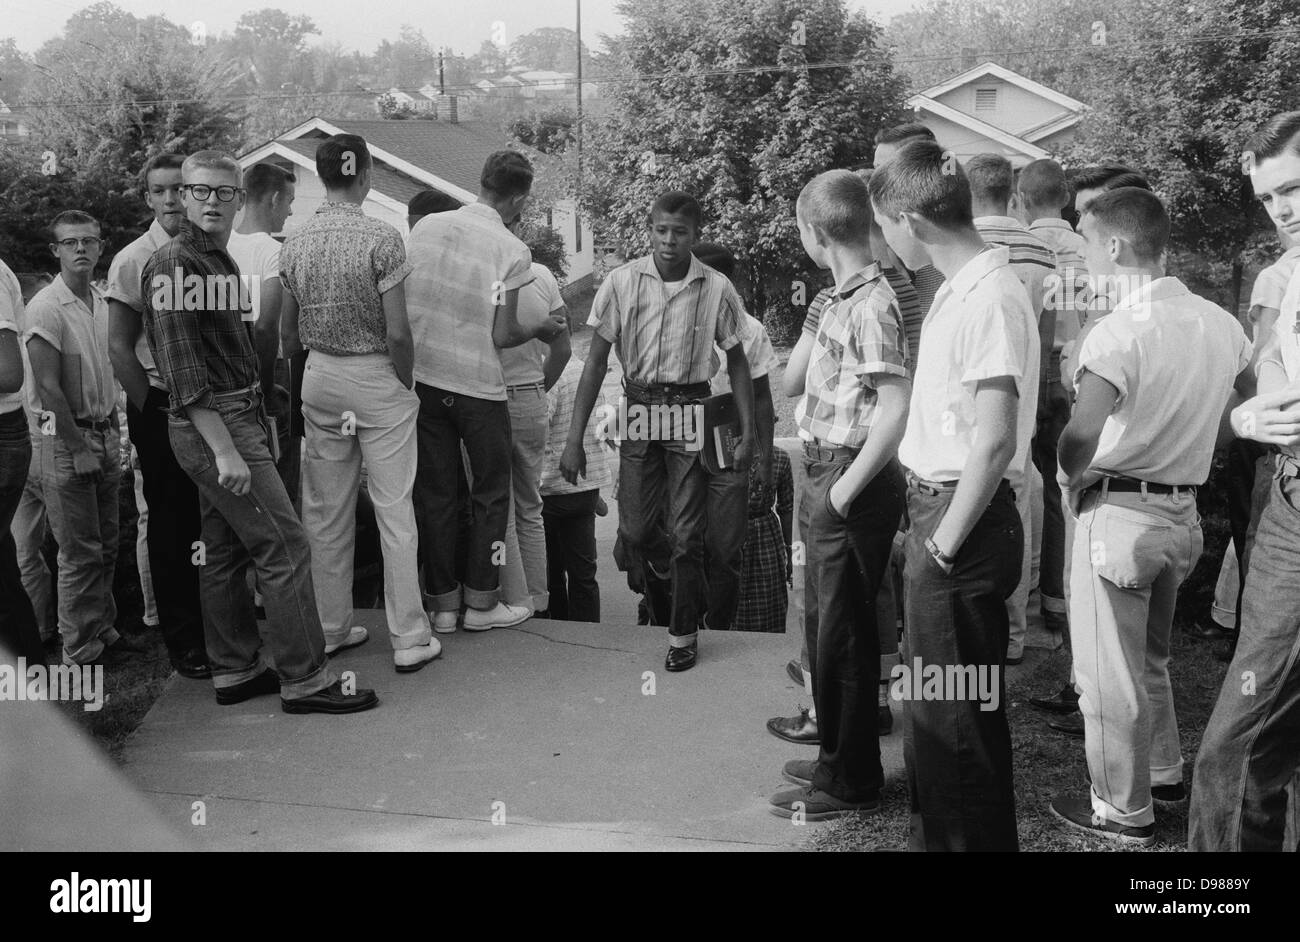 Line of African American boys marche à travers une foule de garçons blancs pendant une période de violences liées à l'intégration scolaire, Little Rock, Arkansas, 4 décembre 1956. Photographe : Thomas J. O'Halloran. Banque D'Images